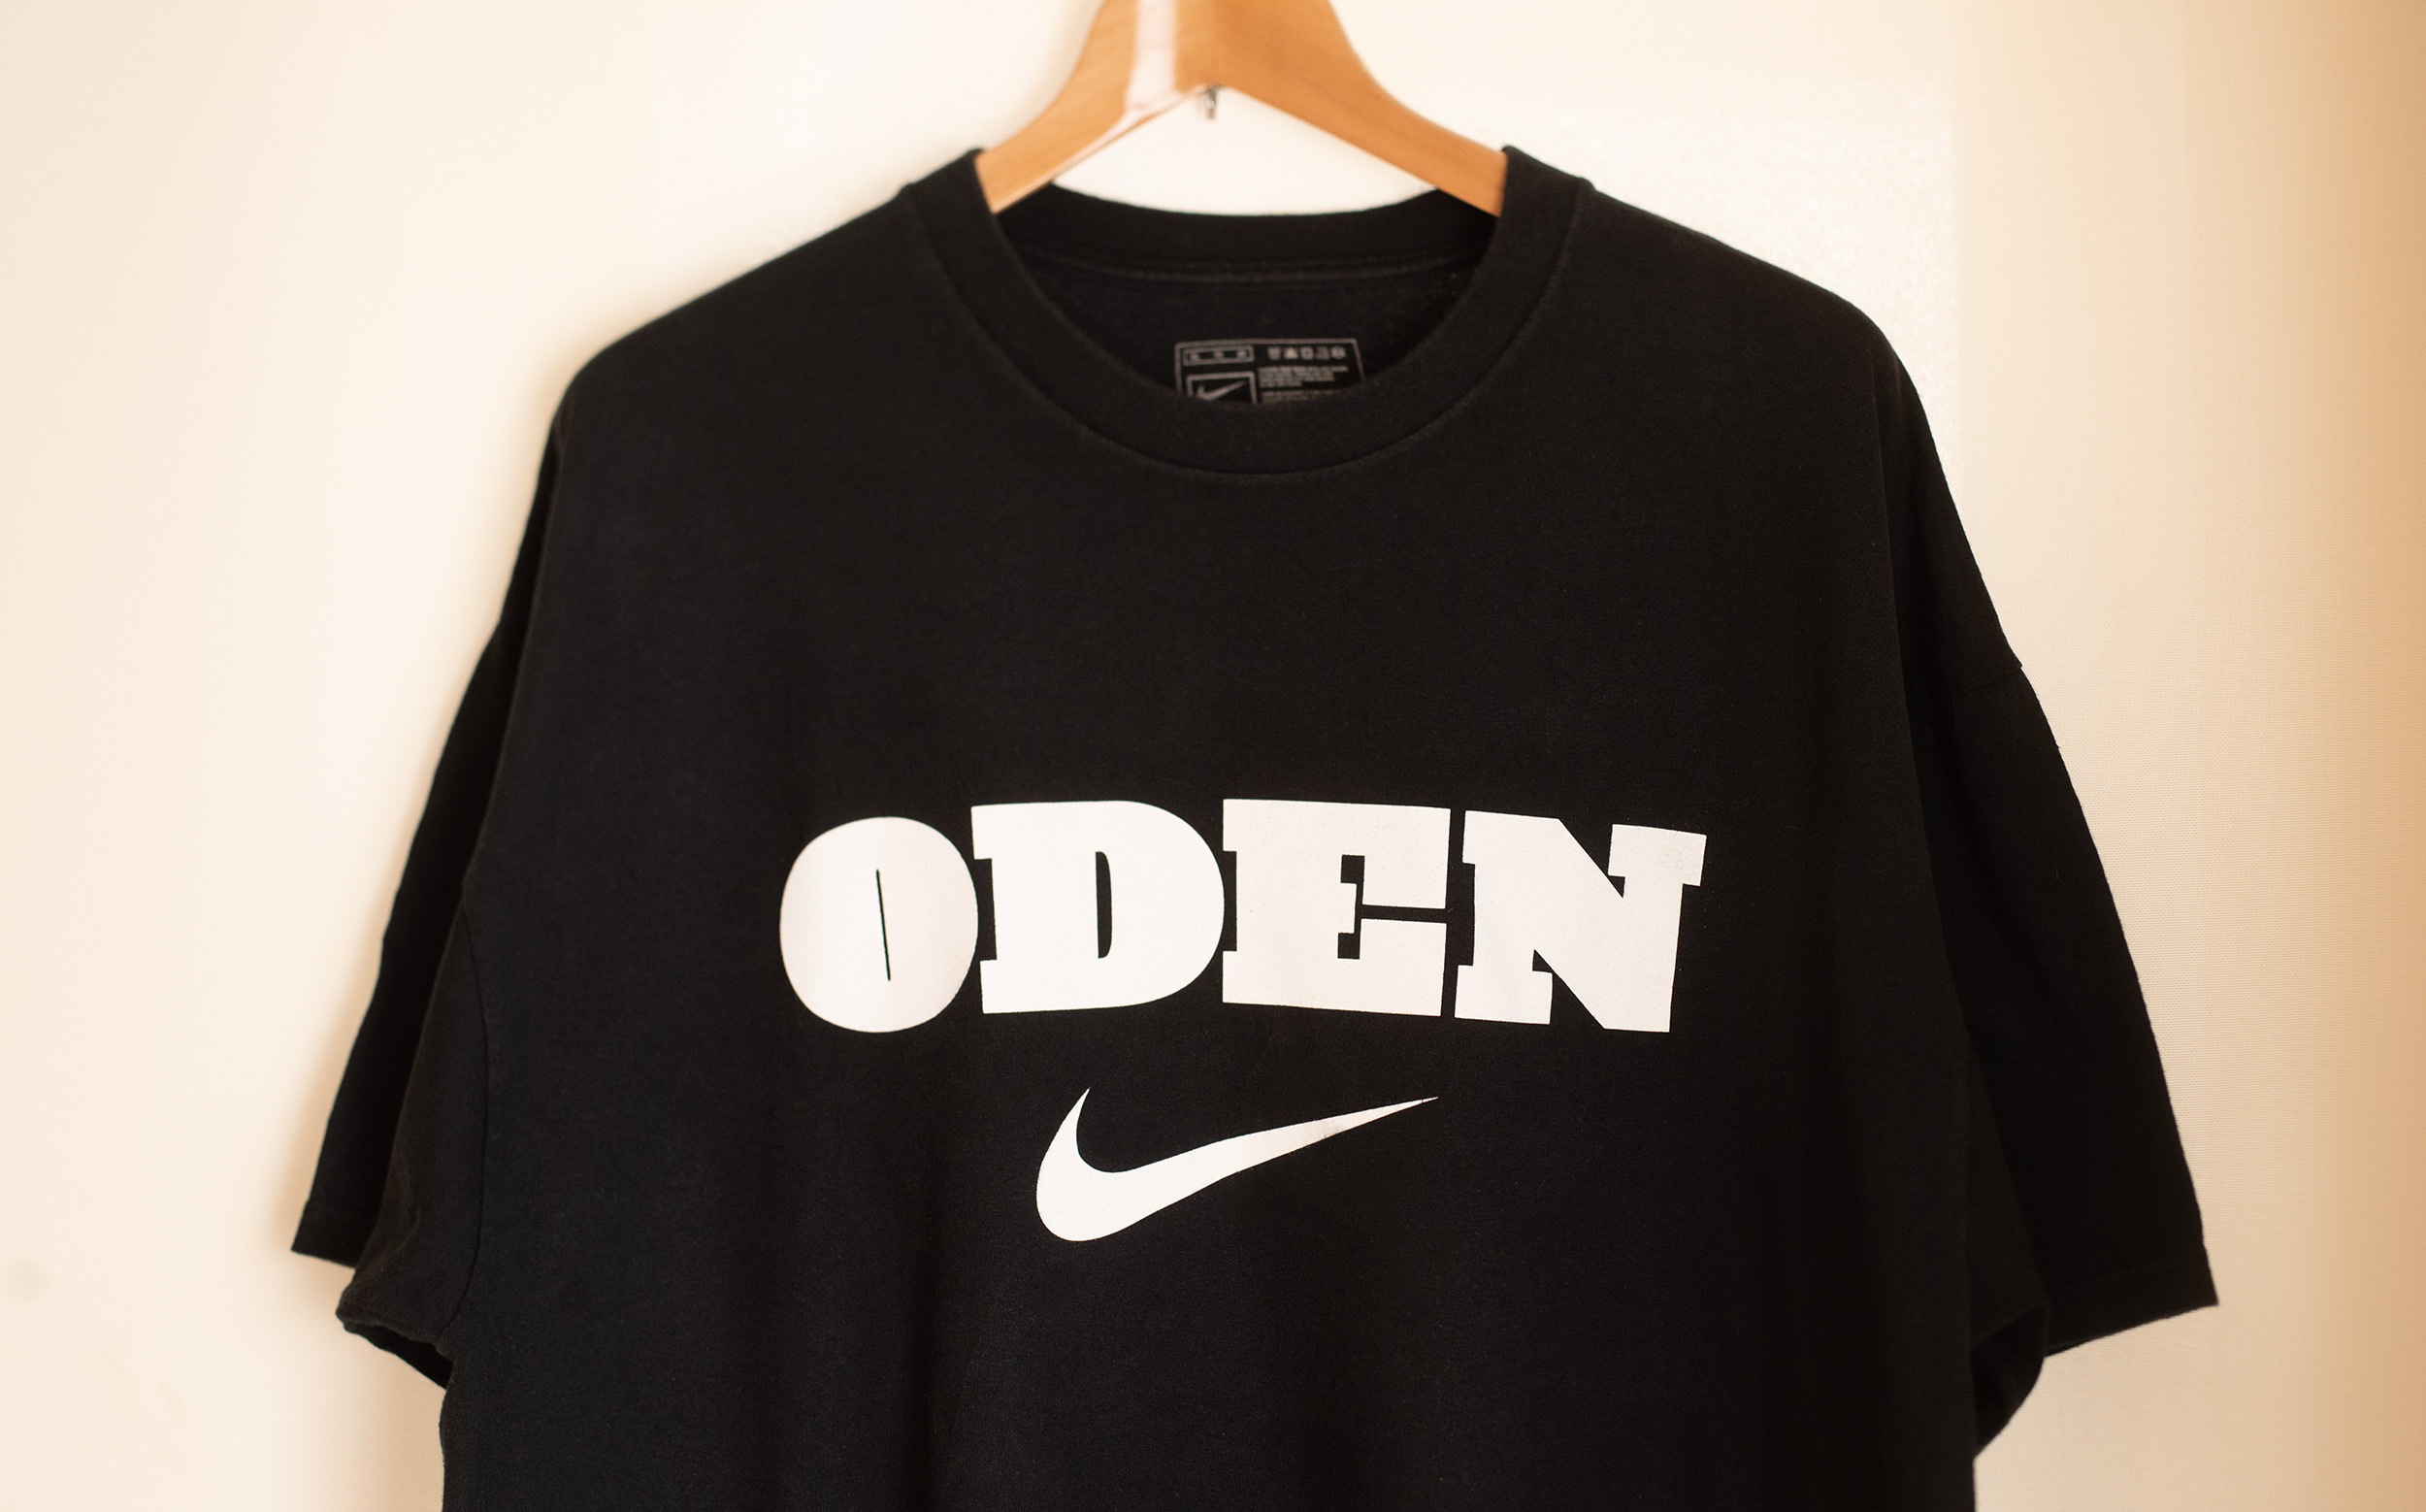 Greg OdenのNike Tシャツ